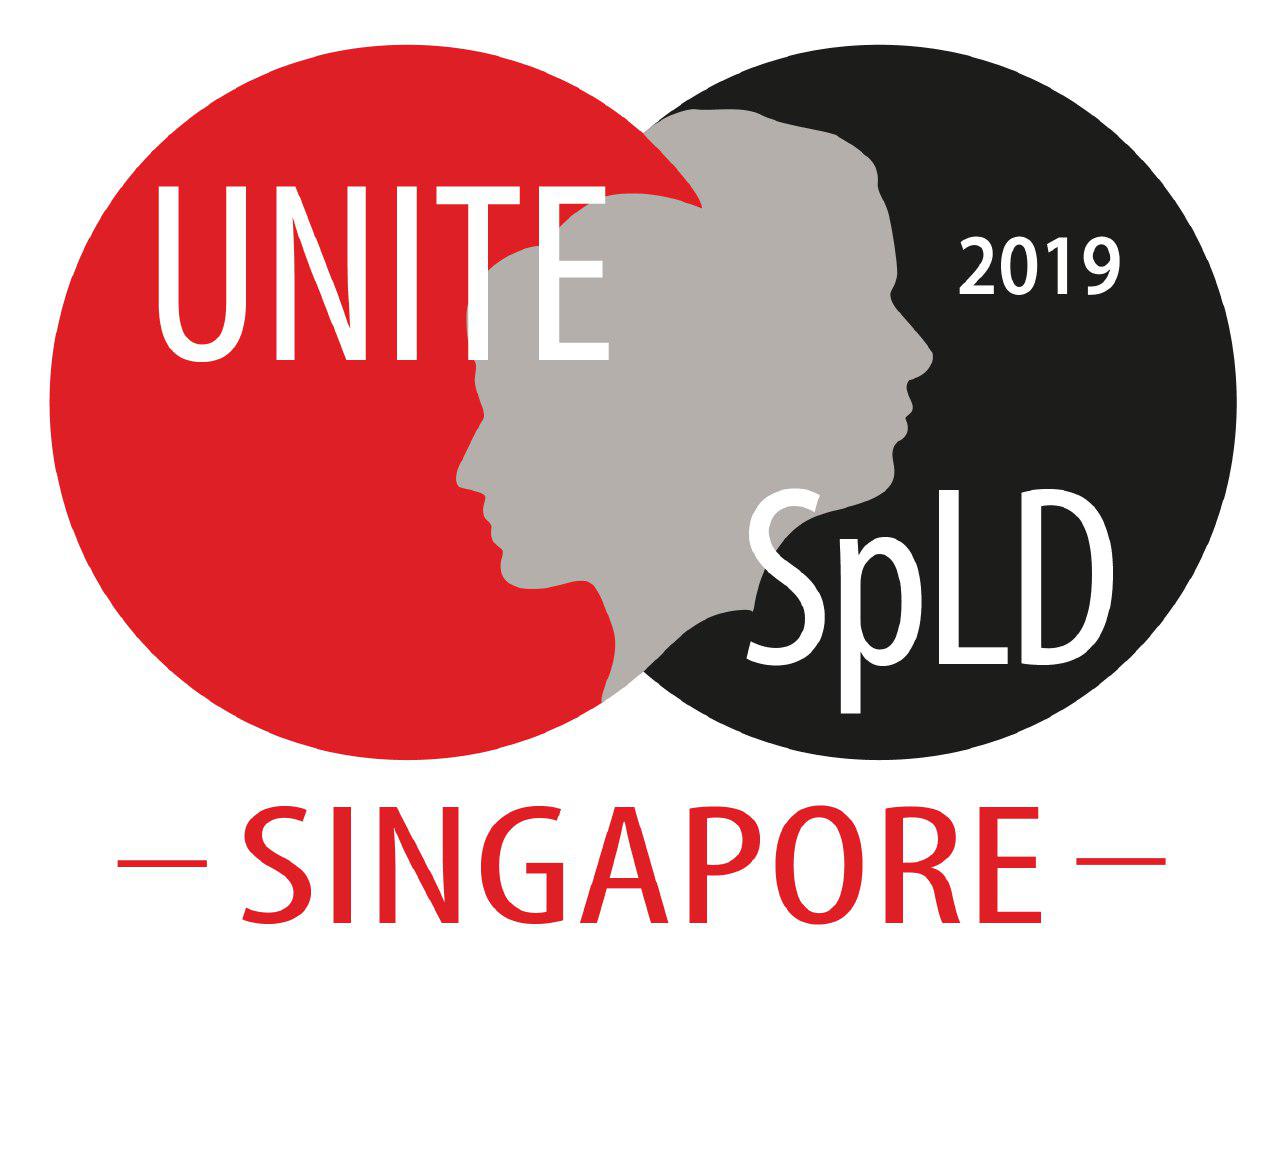 UNITE SPLD 2019, Eunos, Central, Singapore